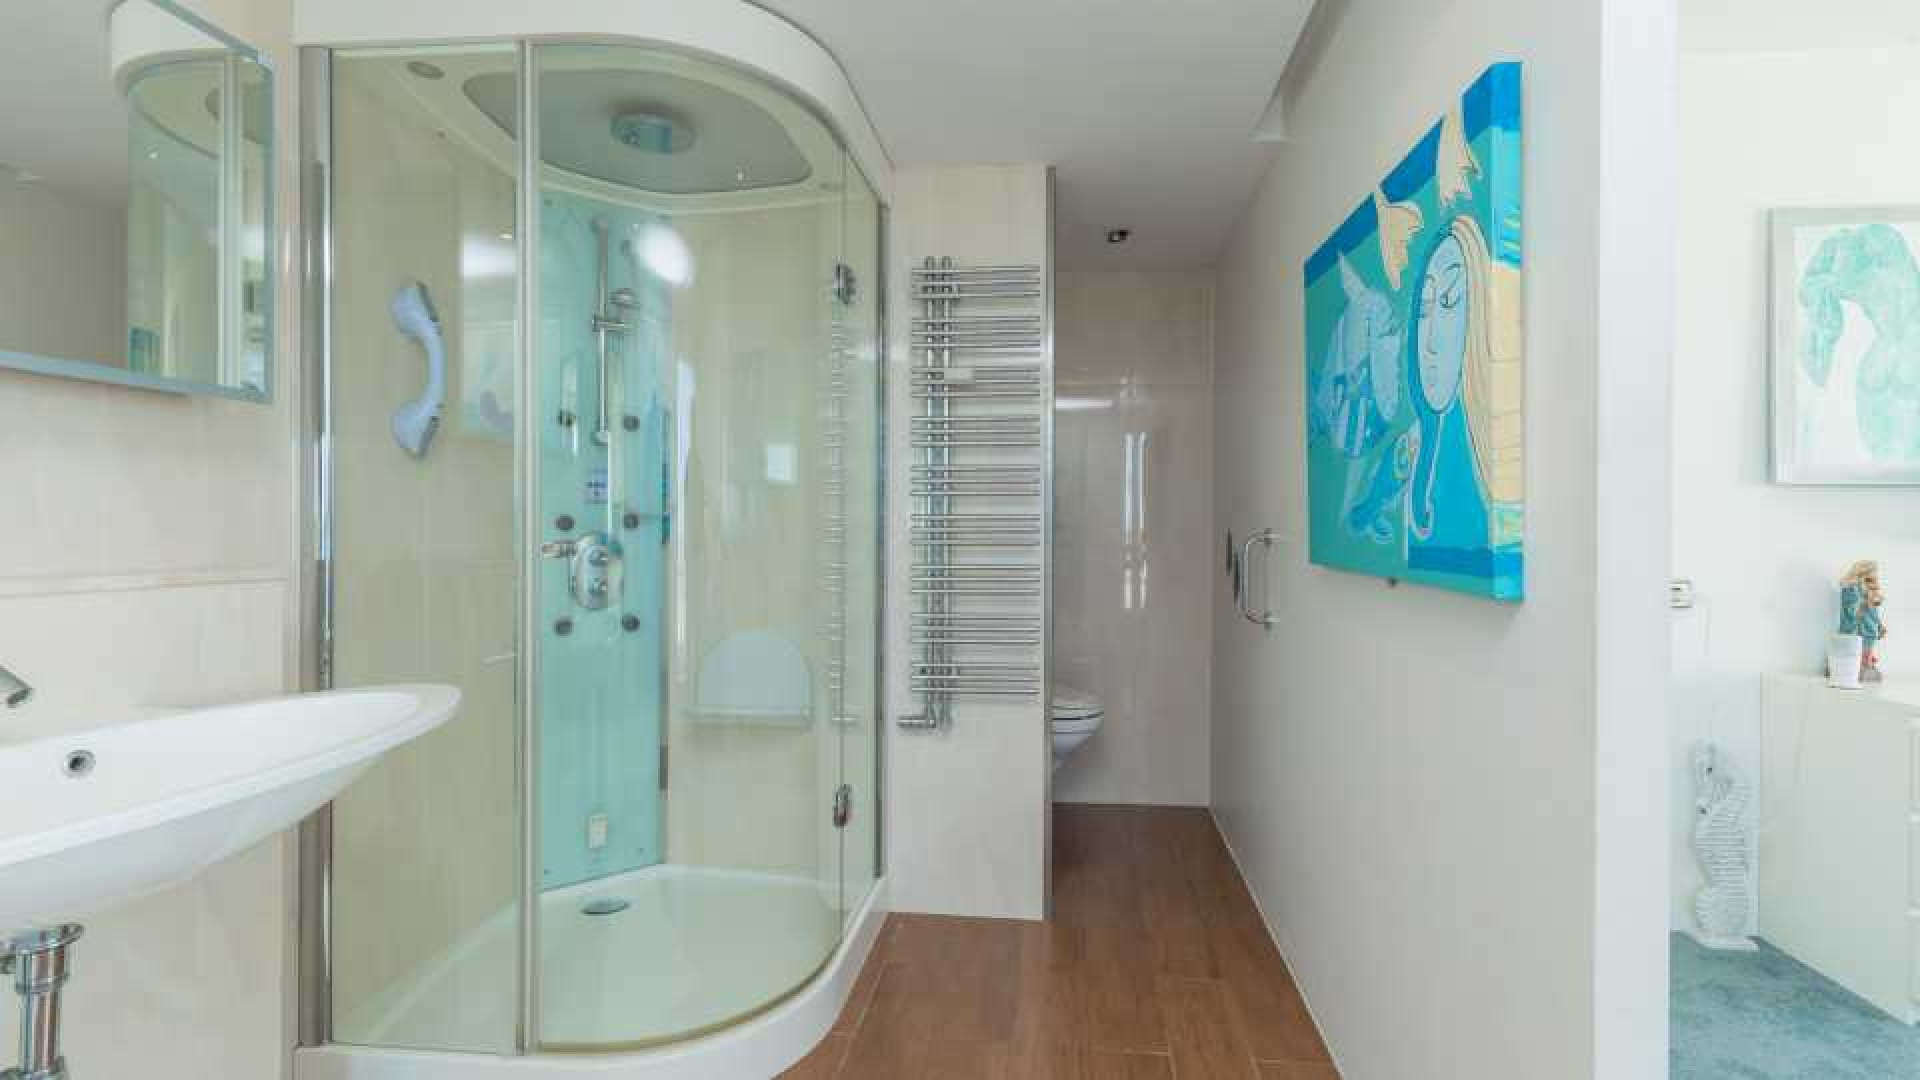 Binnenkijken in dit prachtige penthouse met zeezicht van Ronald Koeman. Zie foto's 10